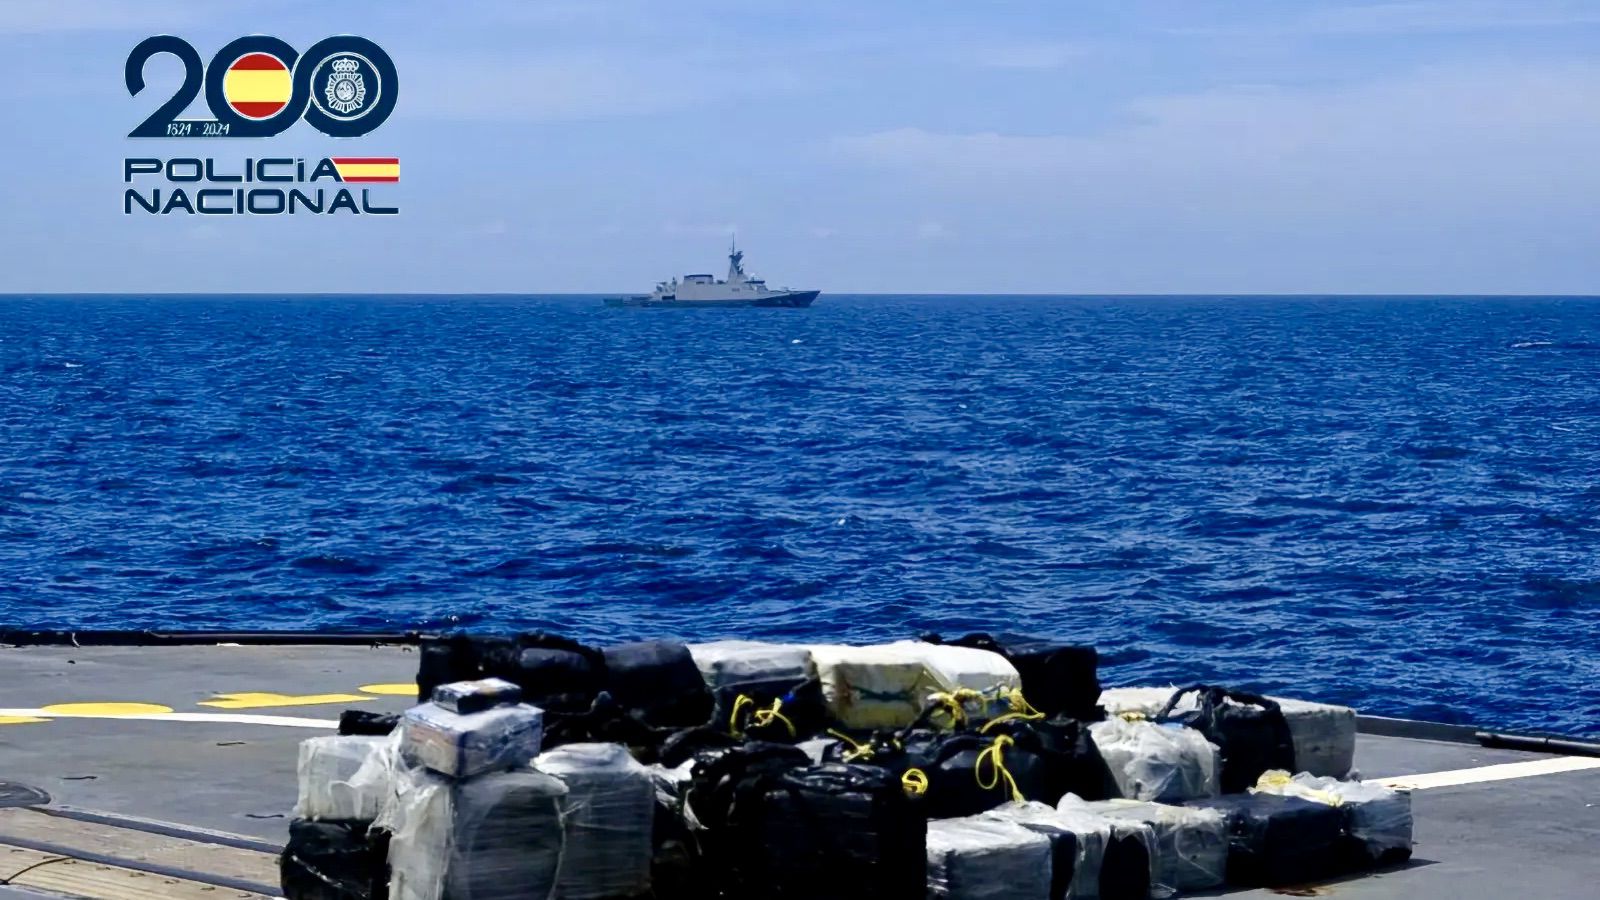 Interceptado un pesquero venezolano con 2,7 toneladas de cocaína cerca de Canarias